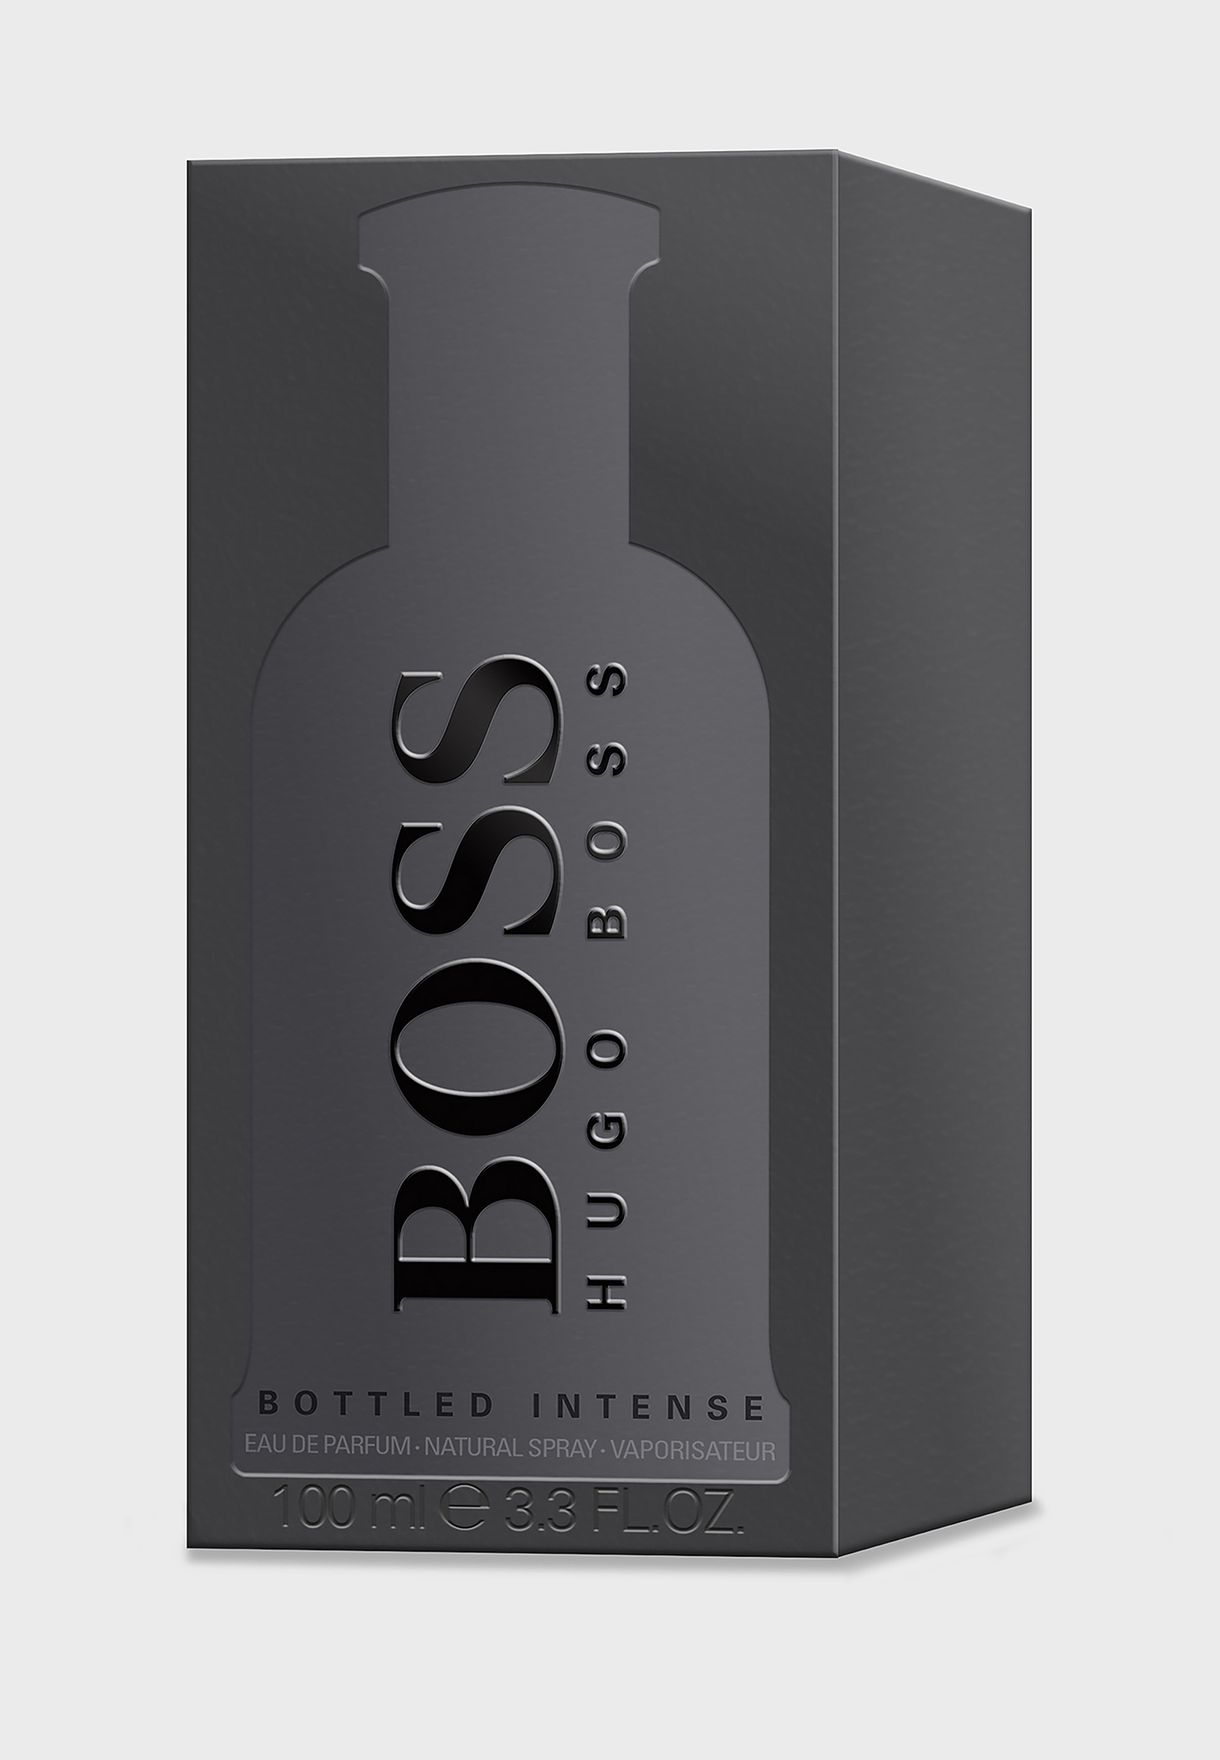 hugo boss boss bottled intense edp